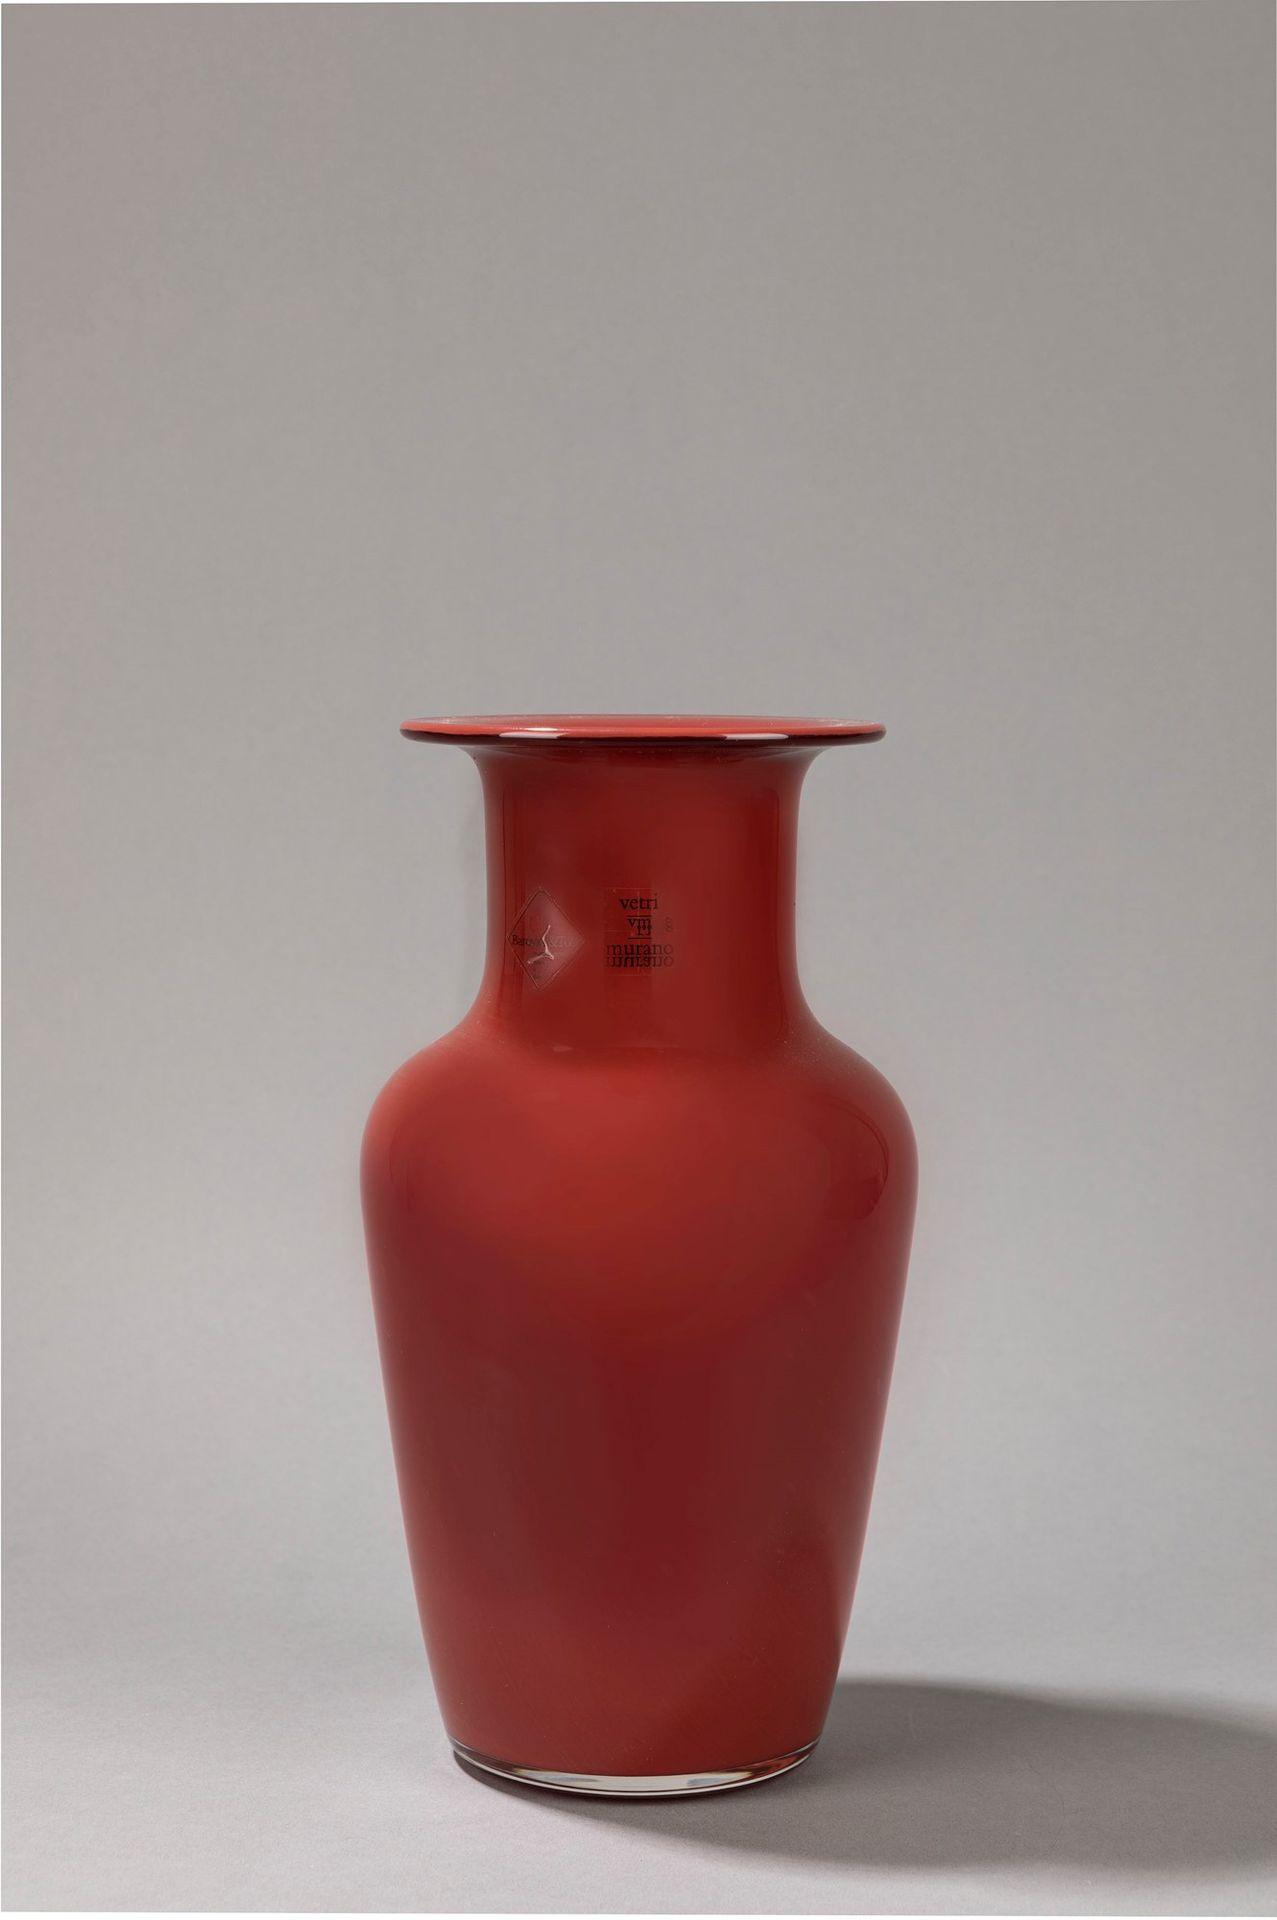 Barovier e Toso Vaso, 1970 ca.

H 30 x 20 cm
vetro soffiato rosso.

Etichetta or&hellip;